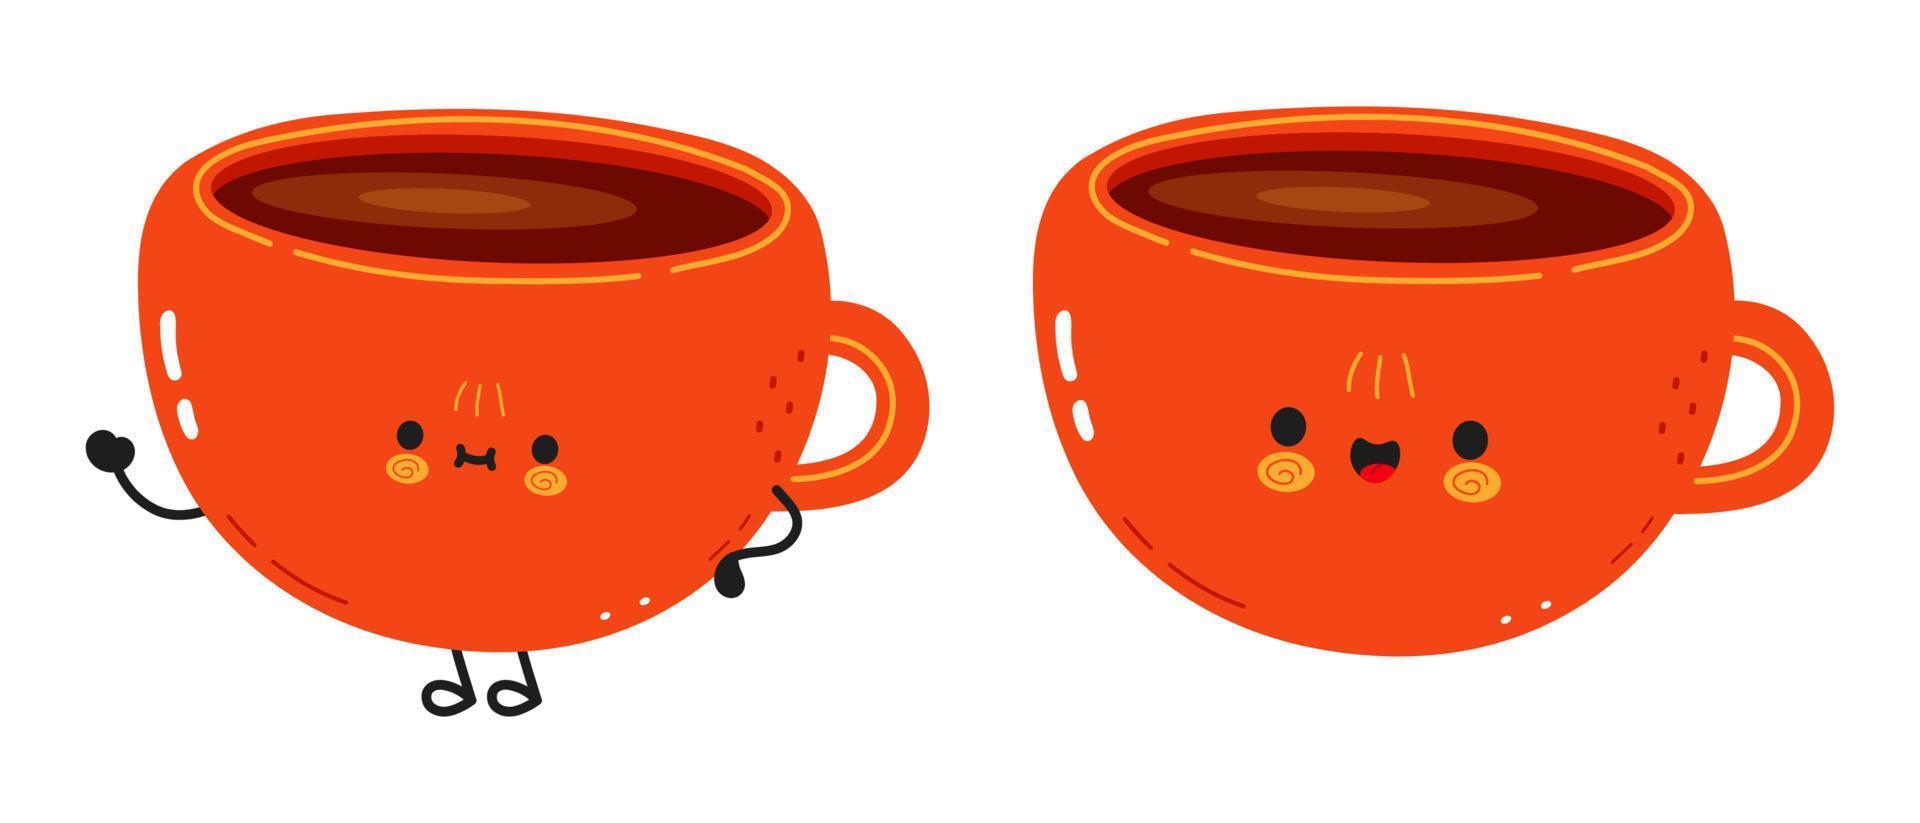 simpatico personaggio divertente della tazza di caffè. icona dell'illustrazione del carattere kawaii del fumetto disegnato a mano di vettore. isolato su sfondo bianco. concetto di carattere tazza di caffè vettore